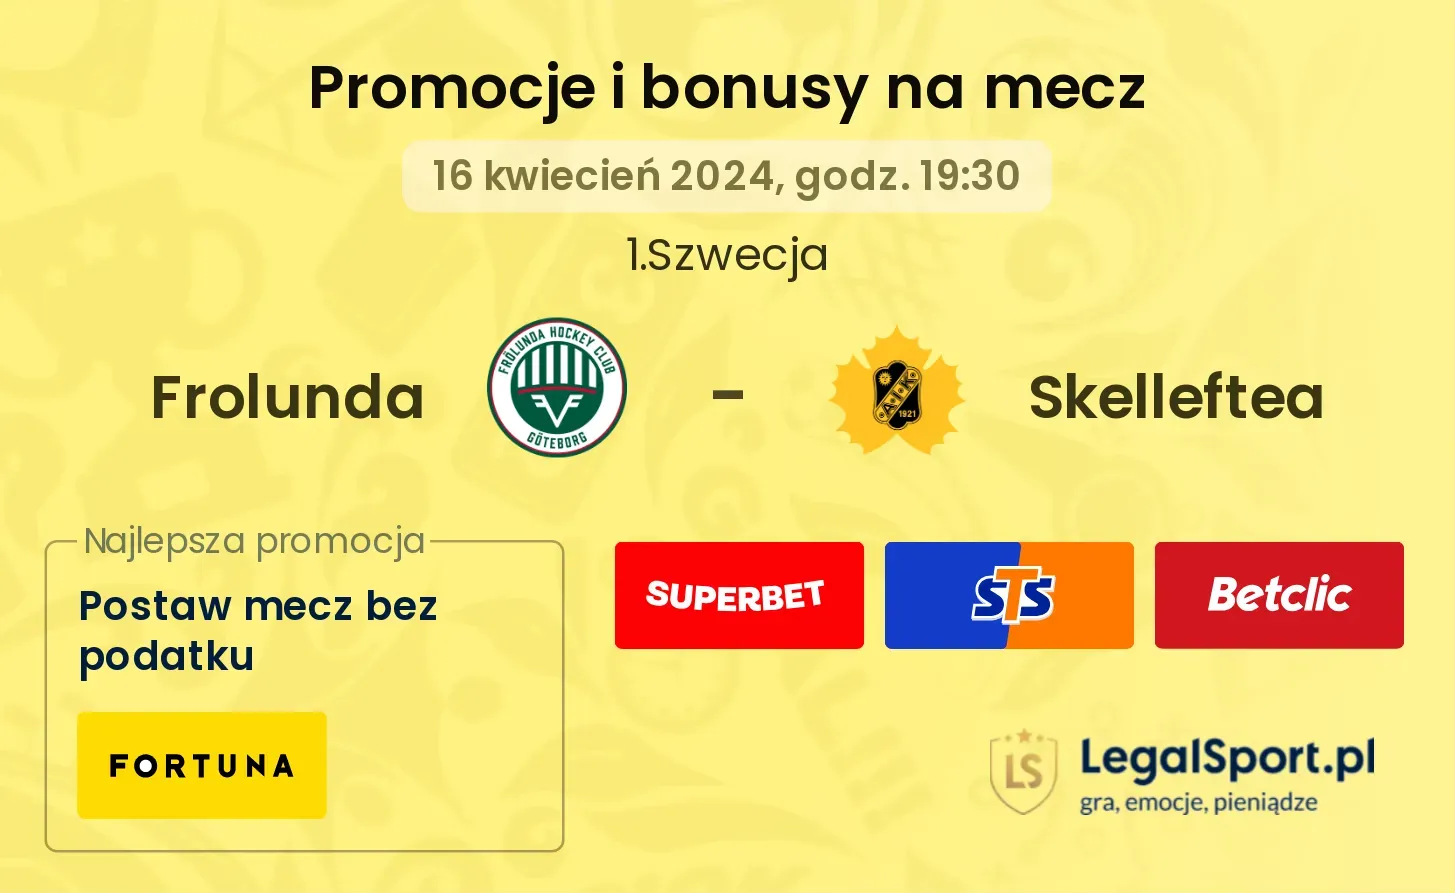 Frolunda - Skelleftea promocje bonusy na mecz